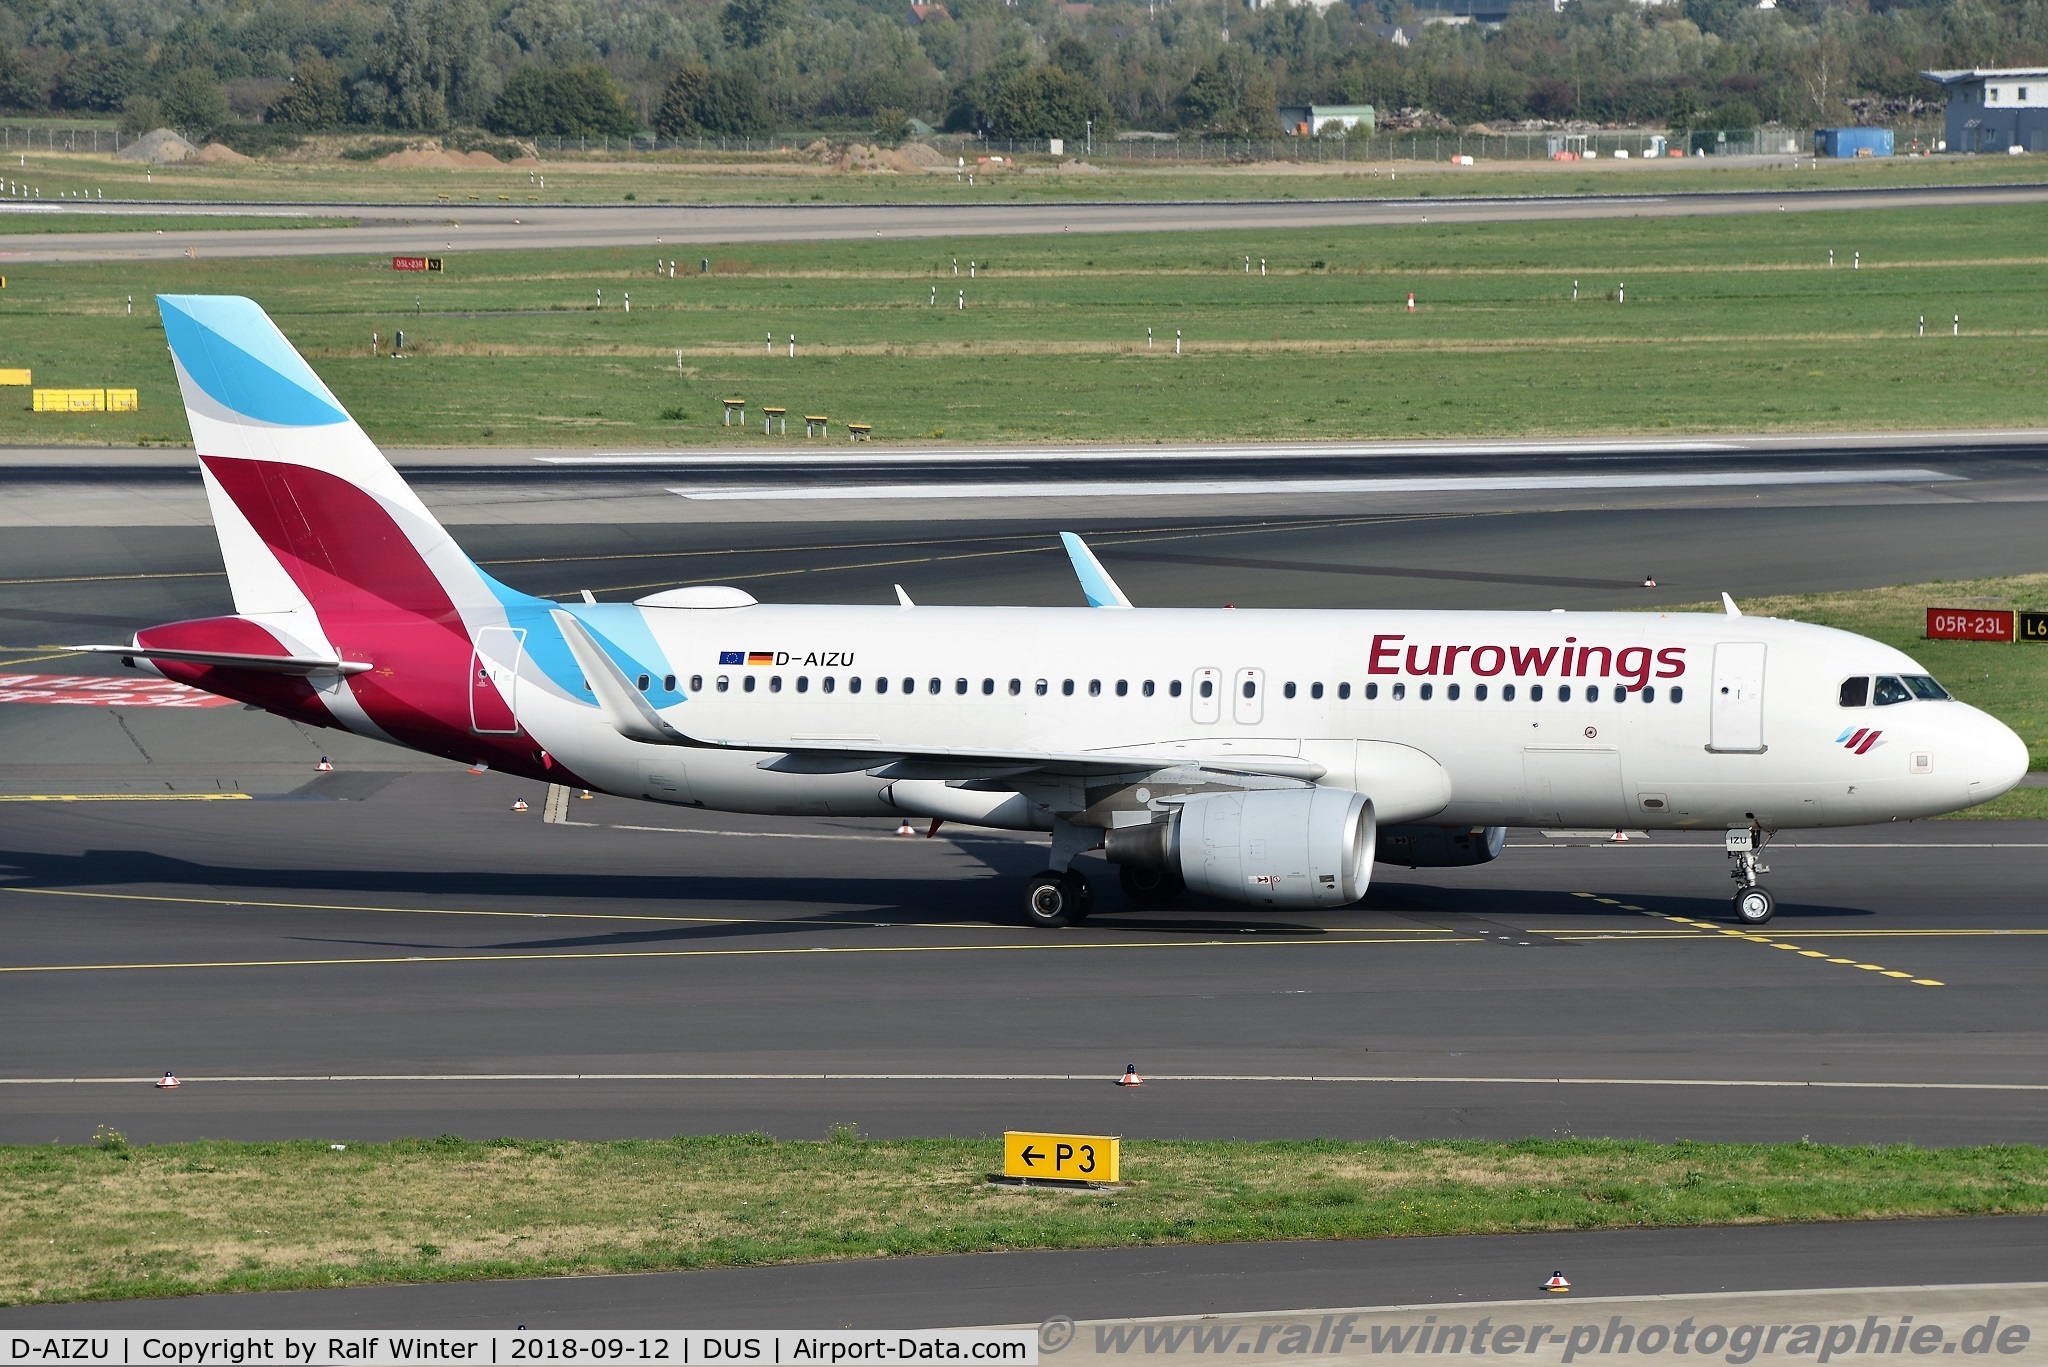 D-AIZU, 2013 Airbus A320-214 C/N 5635, Airbus A320-214(W) - EW EWG Eurowings ex Lufthansa - 5635 - D-AIZU - 12.09.2018 - DUS